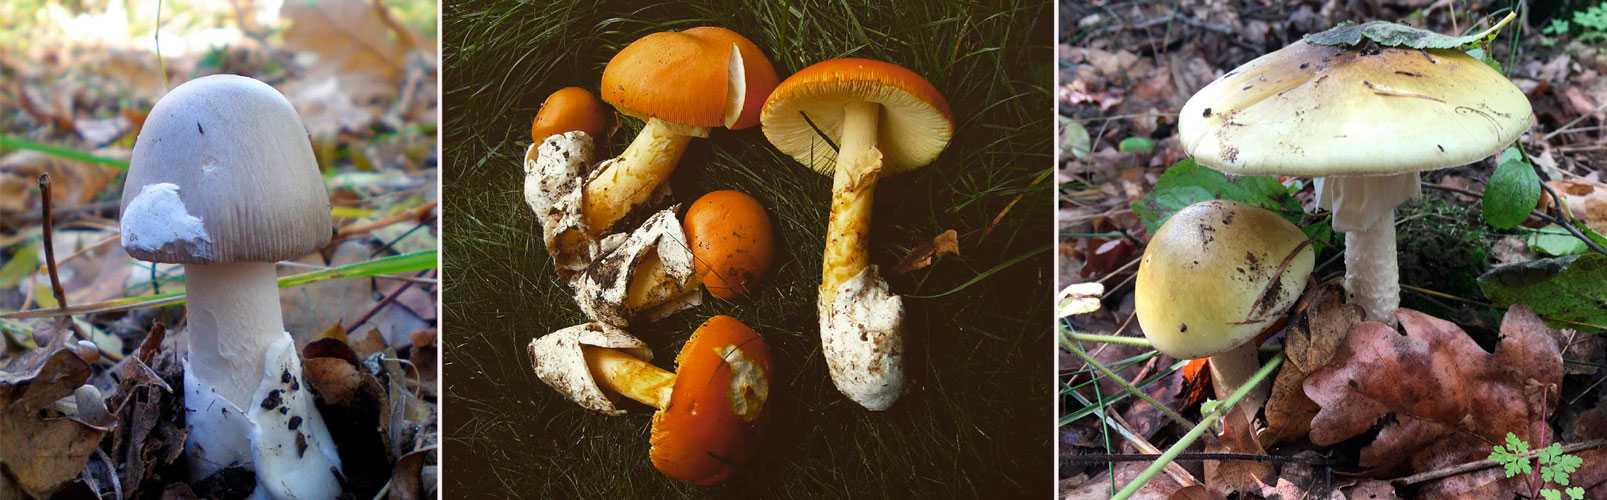 Поплавок шафрановый: где растет и как распознать гриб